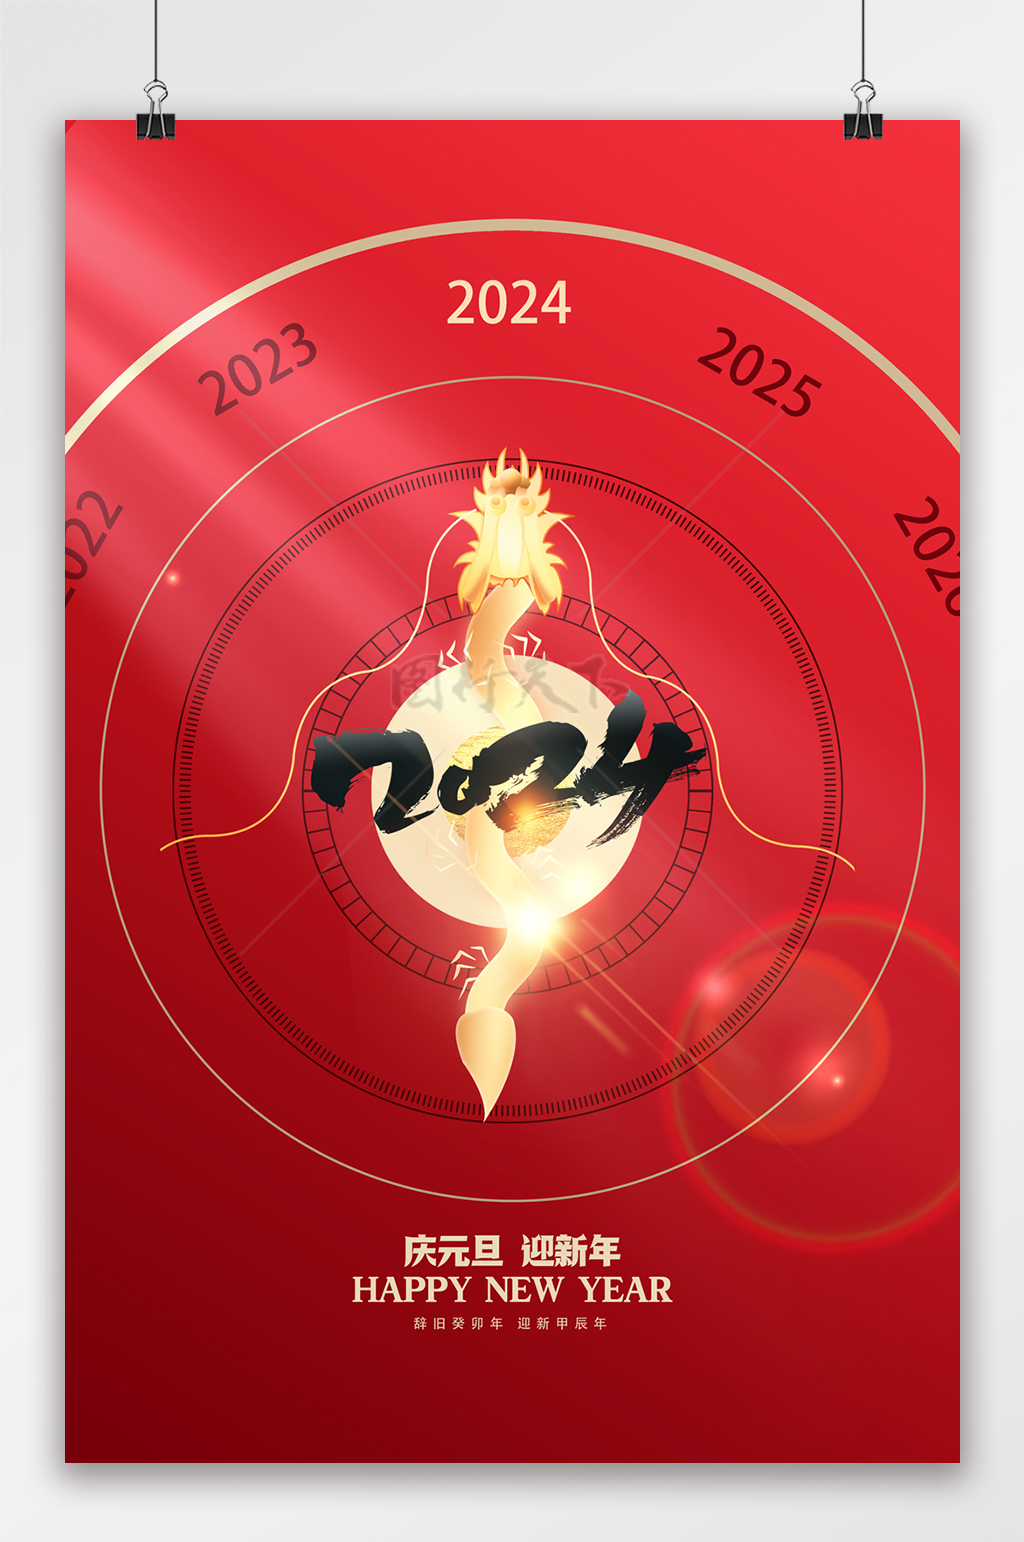 红色大气2024年元旦节日海报